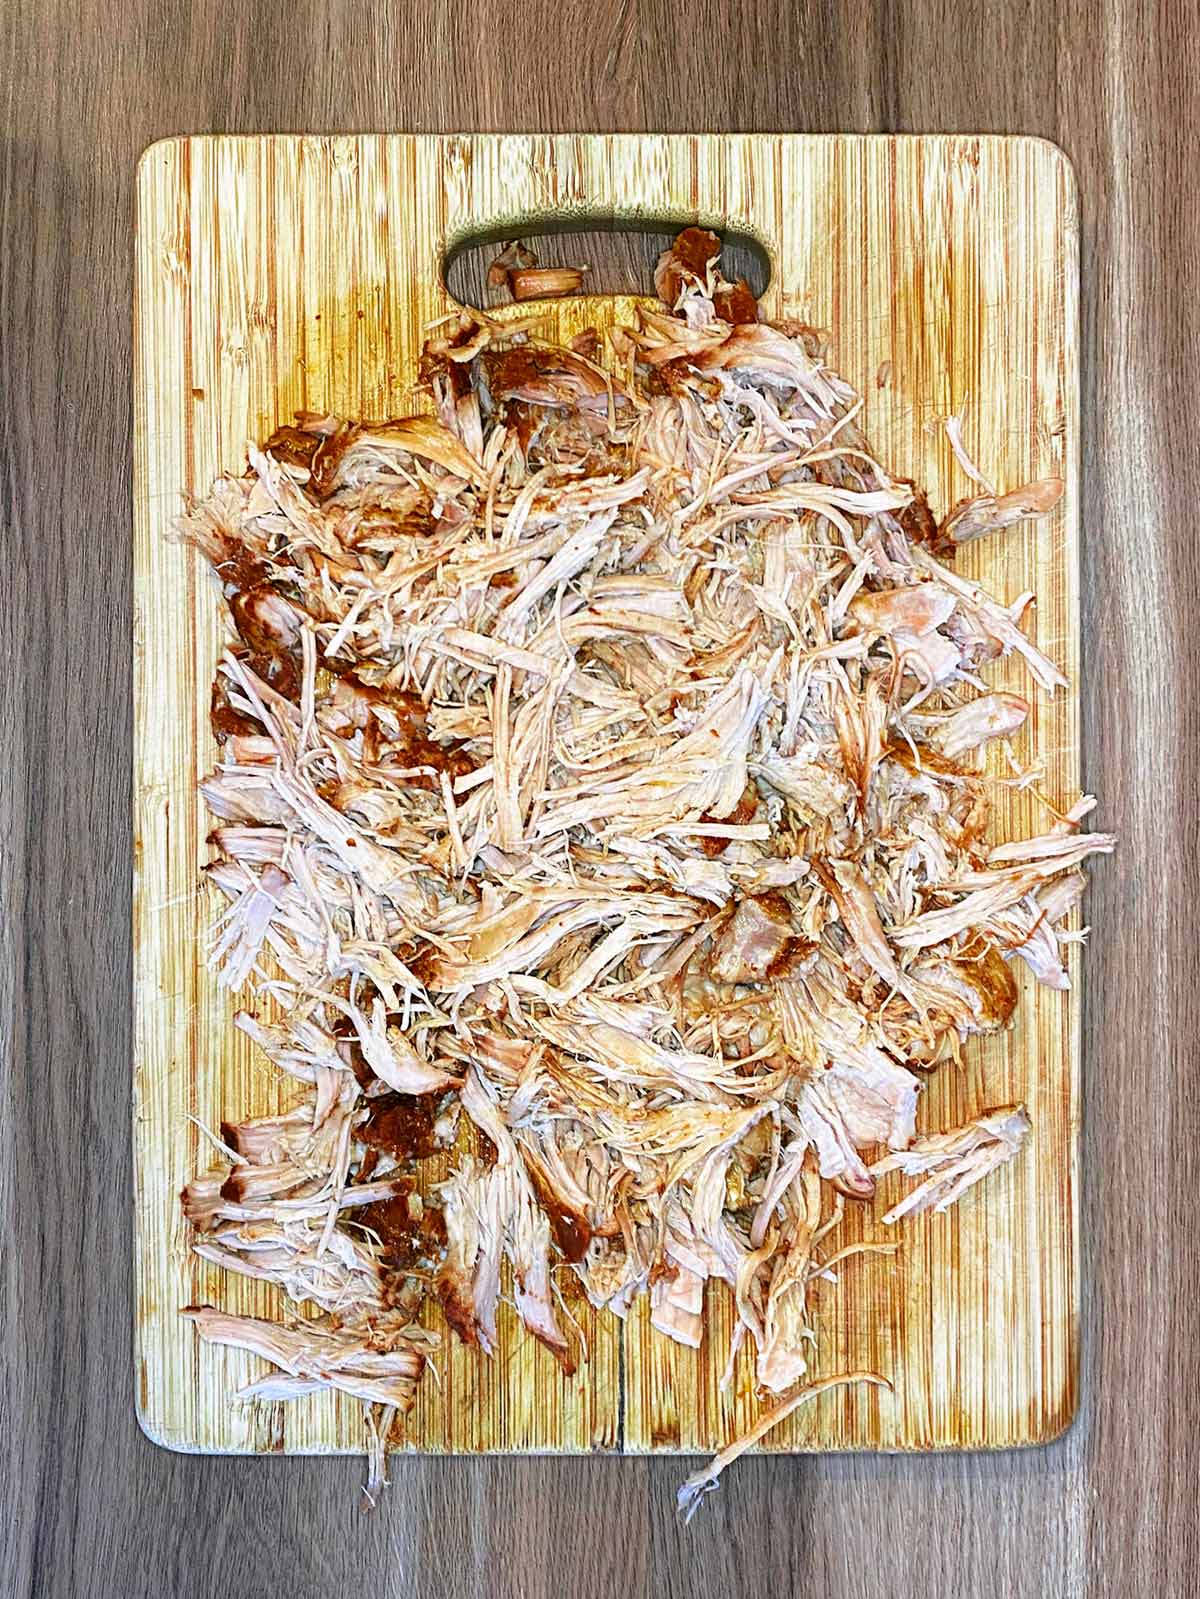 Shredded pork on a chopping board.